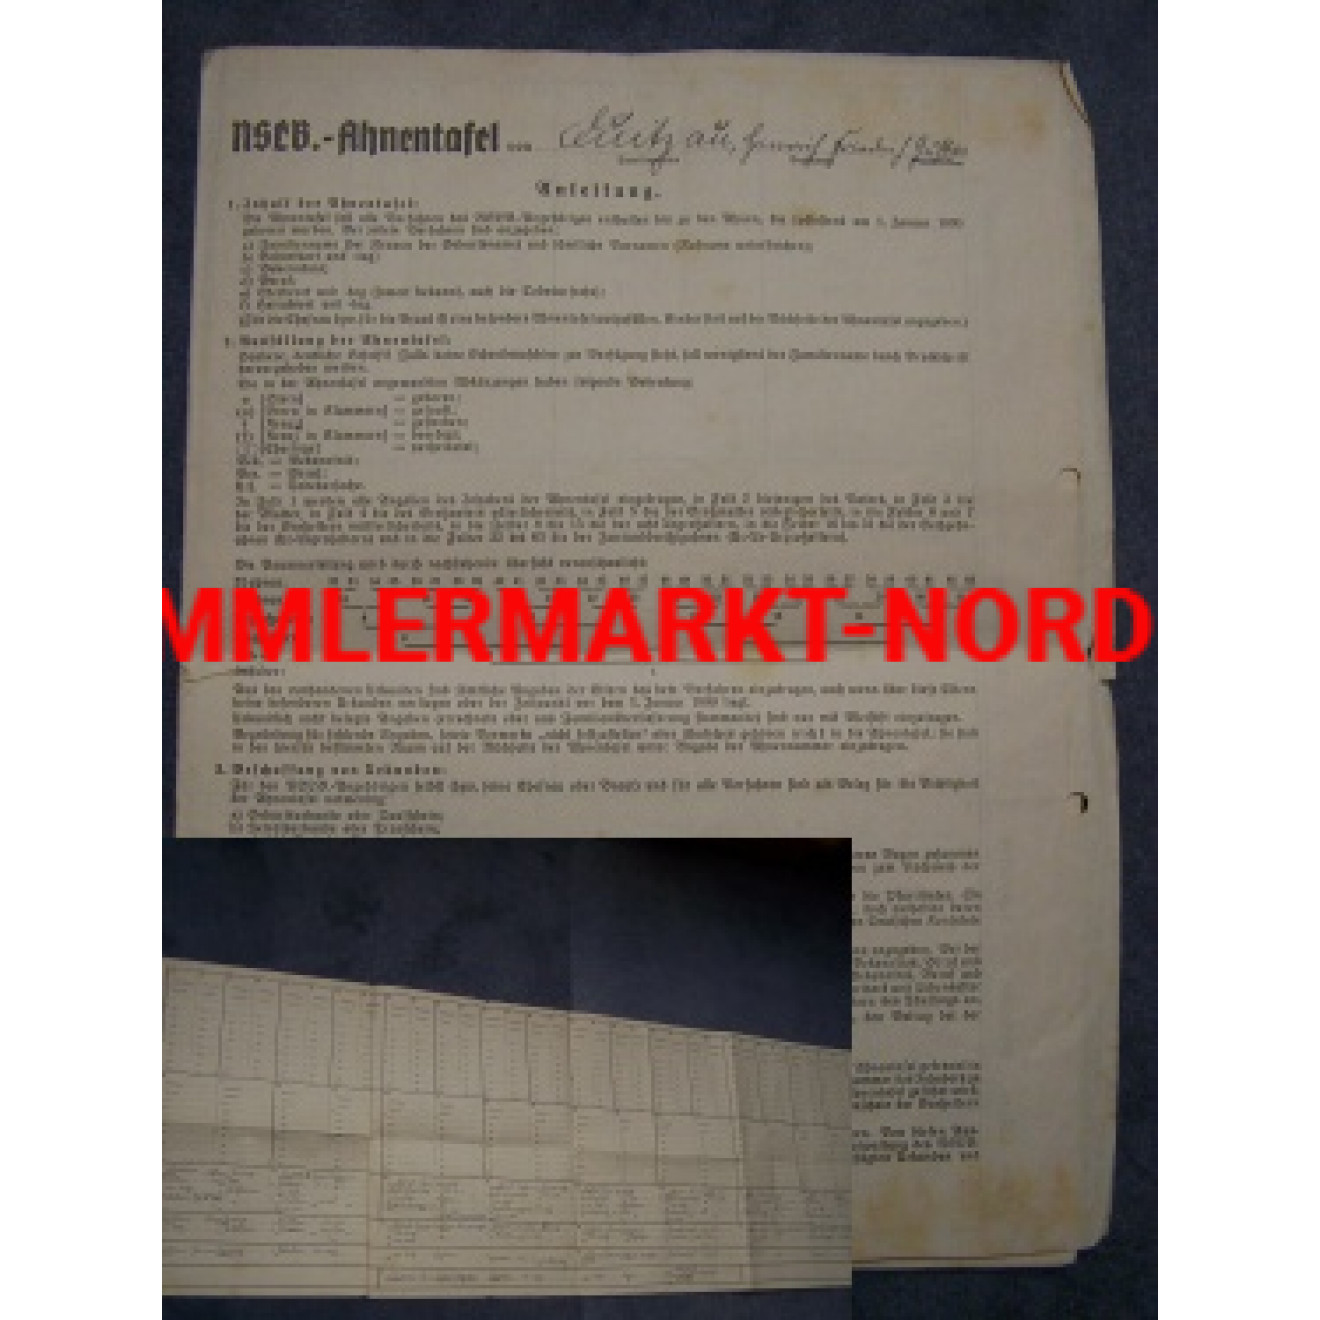 NSLB - Ahnentafel (National Sozialiatischer Lehrerbund)